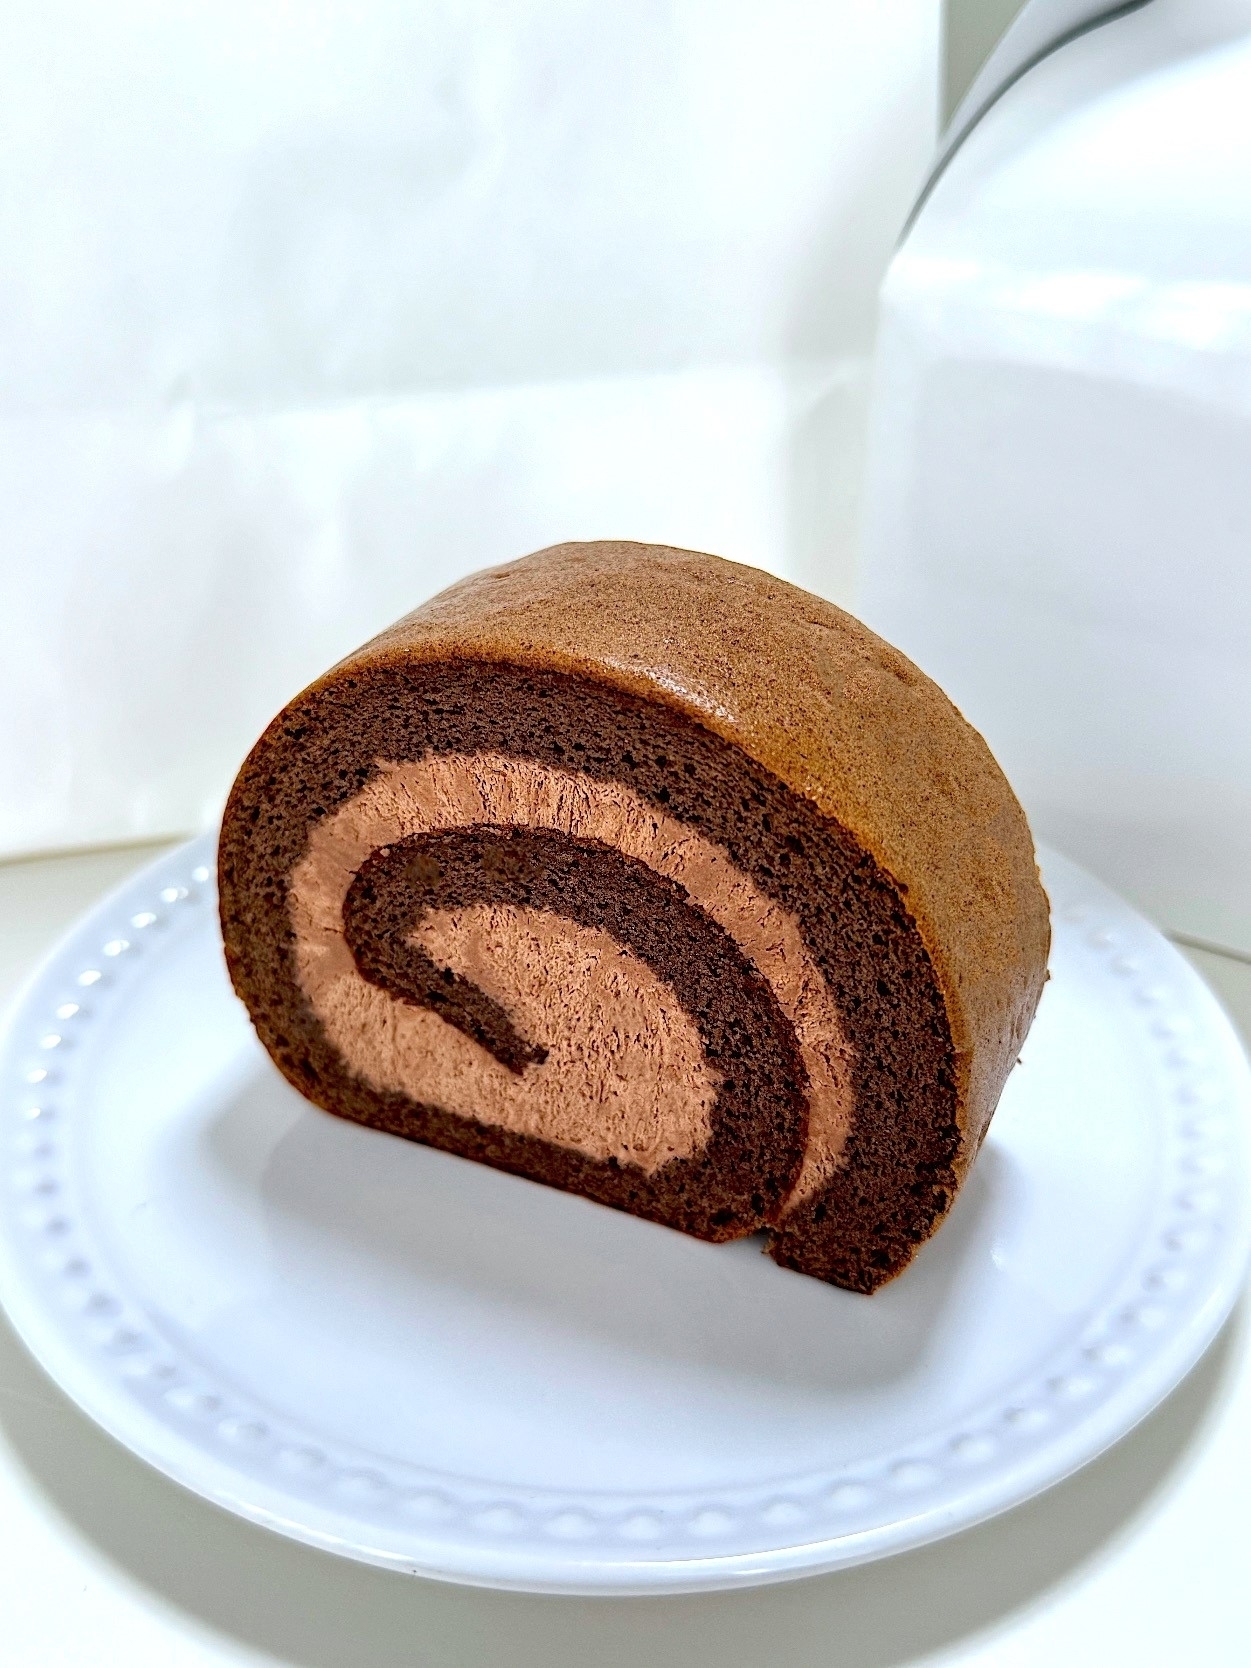 星乃珈琲のおすすめケーキ「チョコレートロールケーキ」